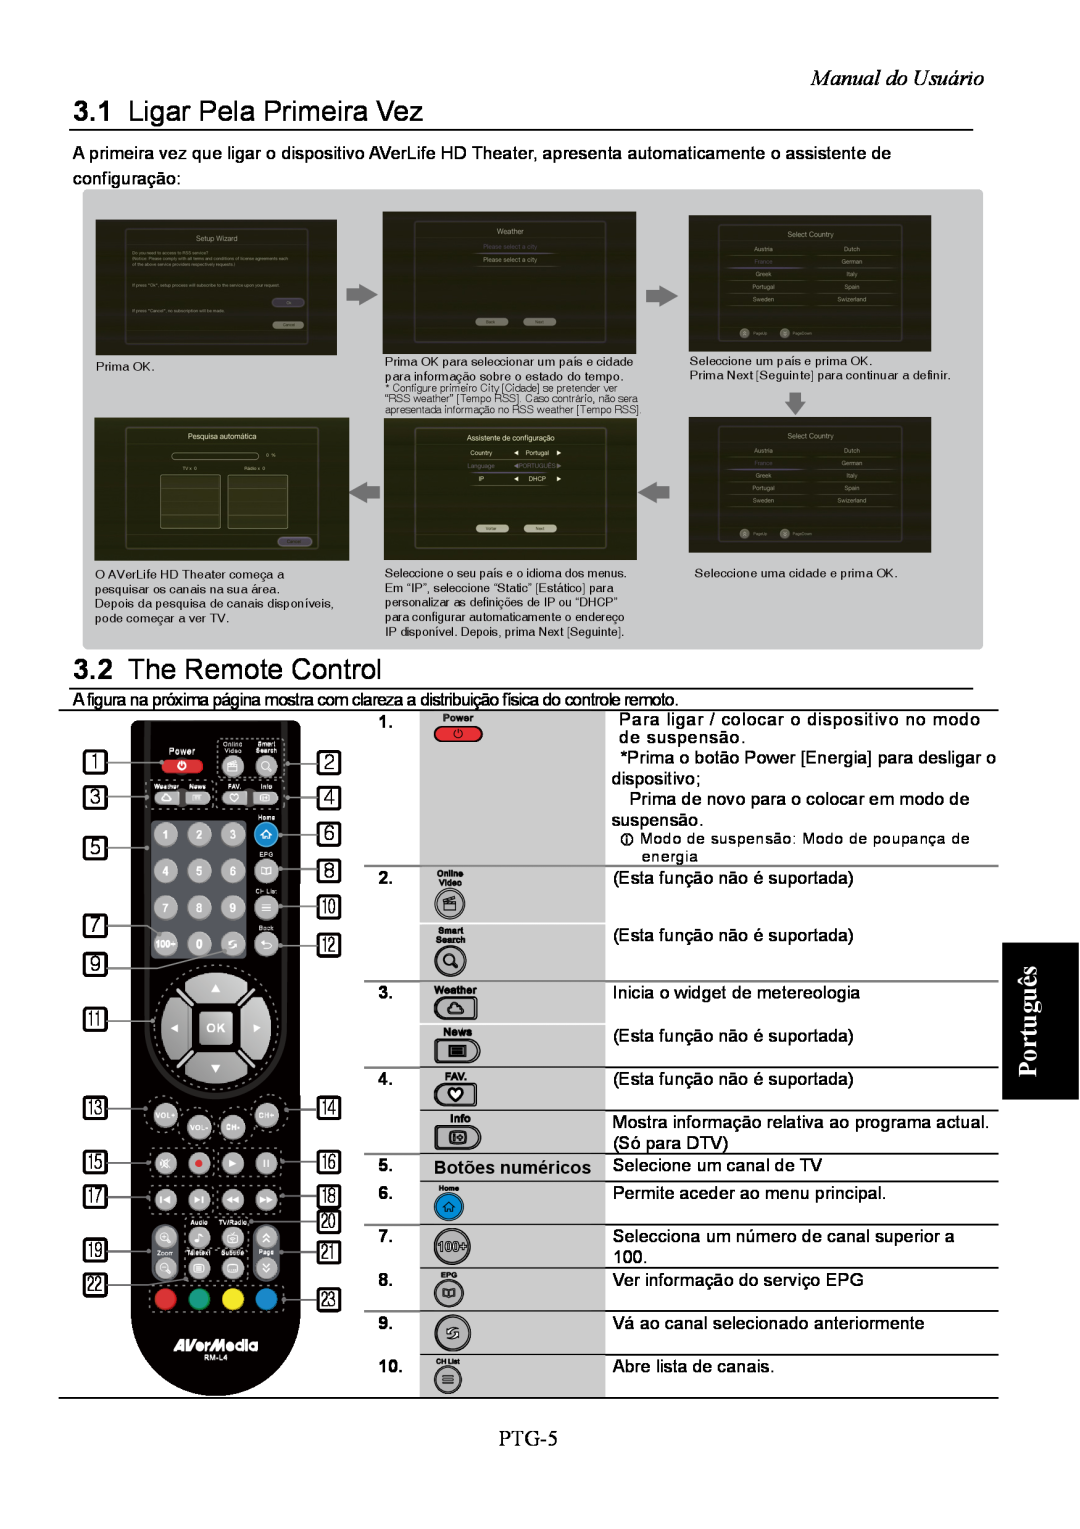 AVerMedia Technologies A211 user manual 3.1Ligar Pela Primeira Vez, 3.2The Remote Control, Manual do Usuário, PTG-5 